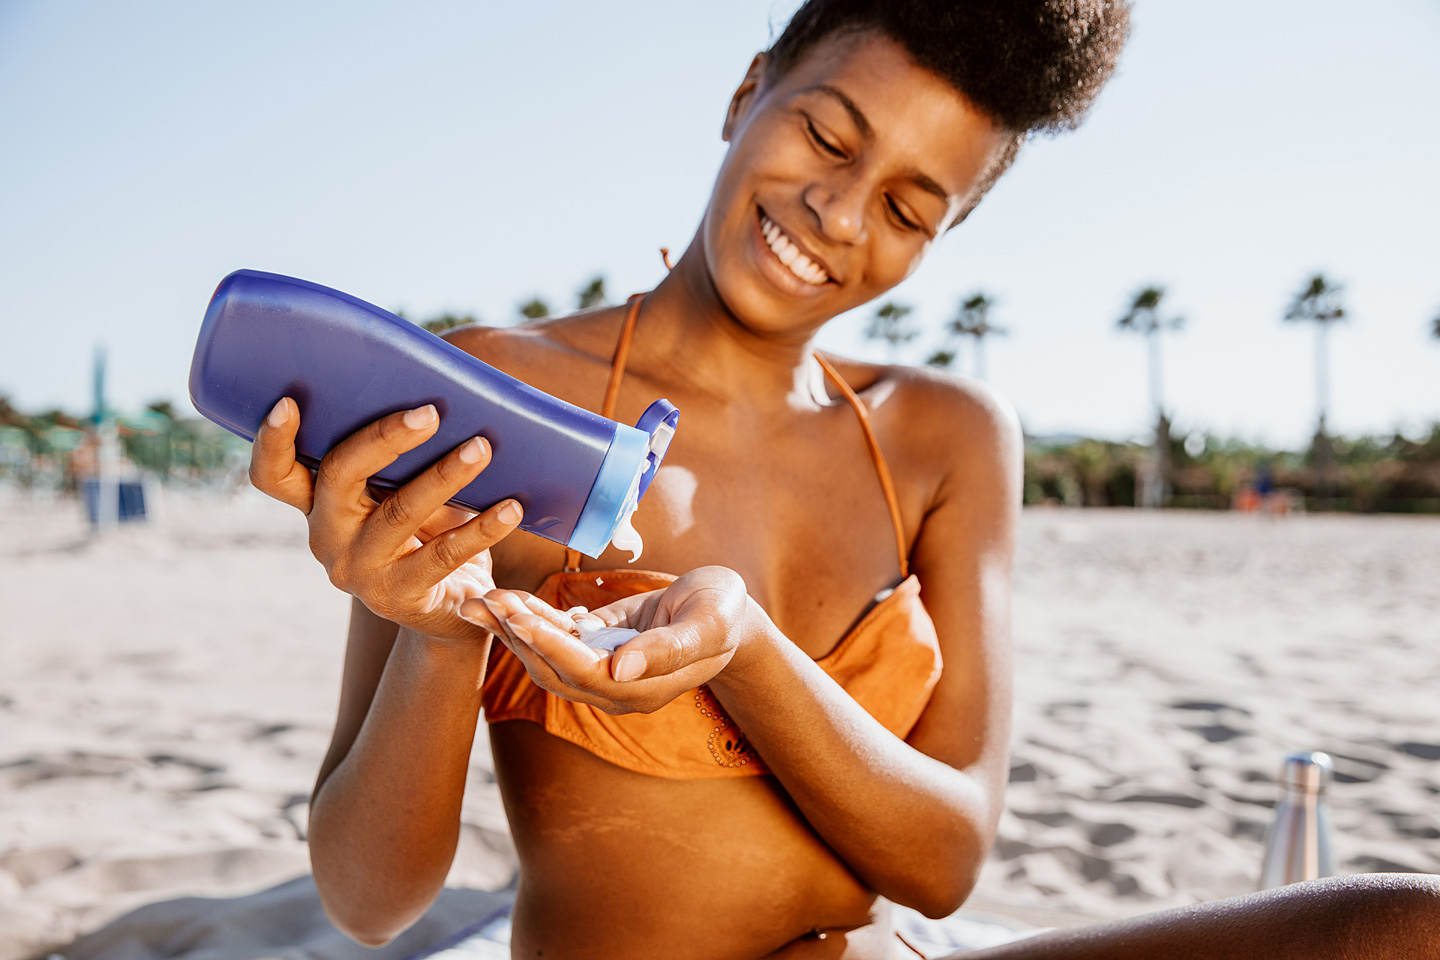 Eine junge Frau am Strand drückt Sonnencreme aus einer Flasche in die Hand, um sich vor der Sonne zu schützen.